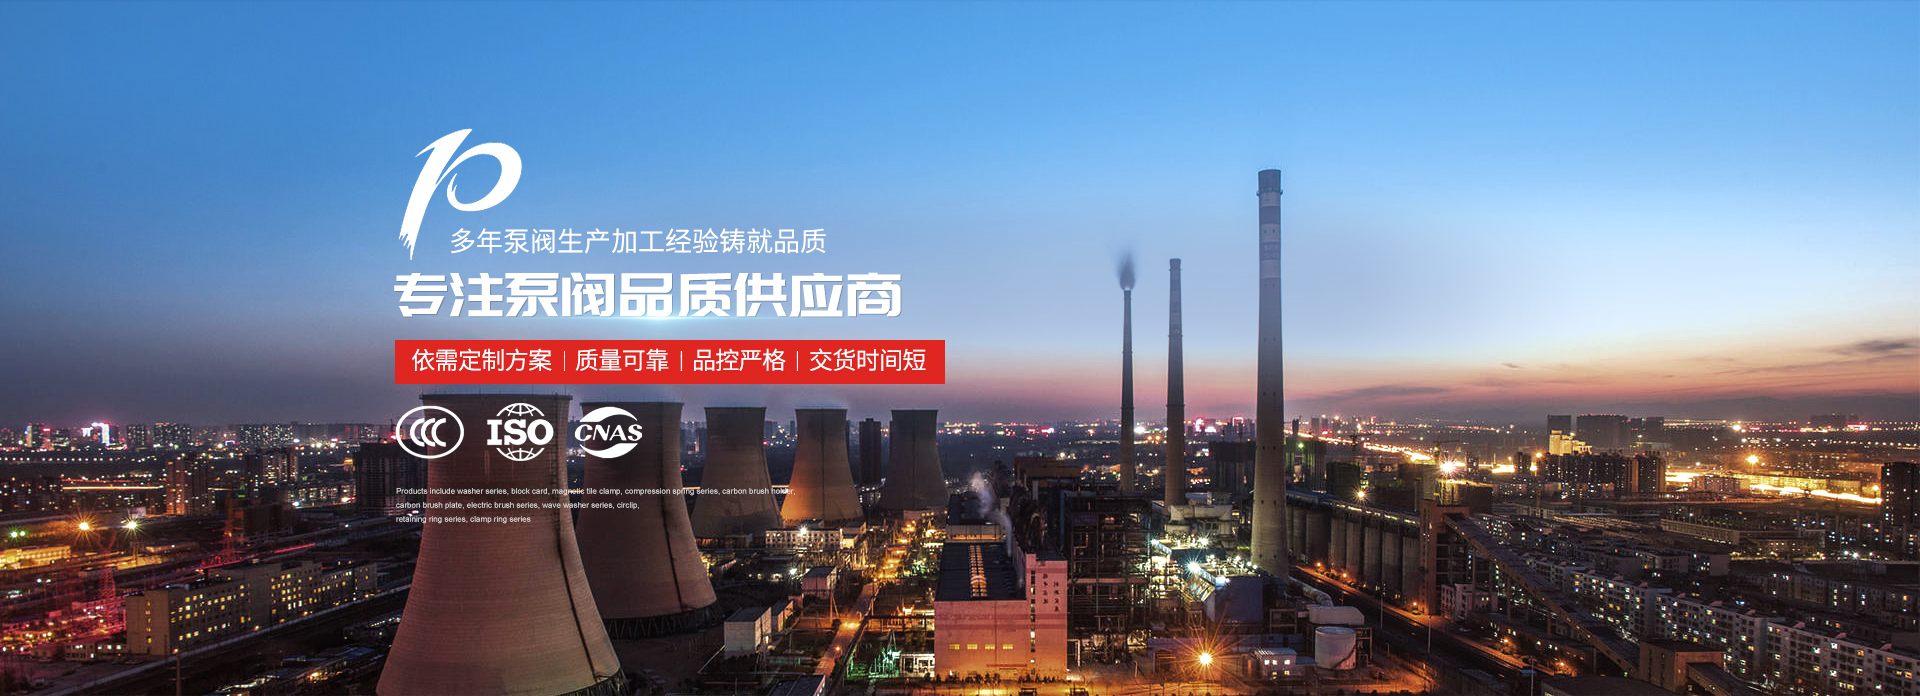 潛水排污泵廠家-上海高適泵閥有限公司